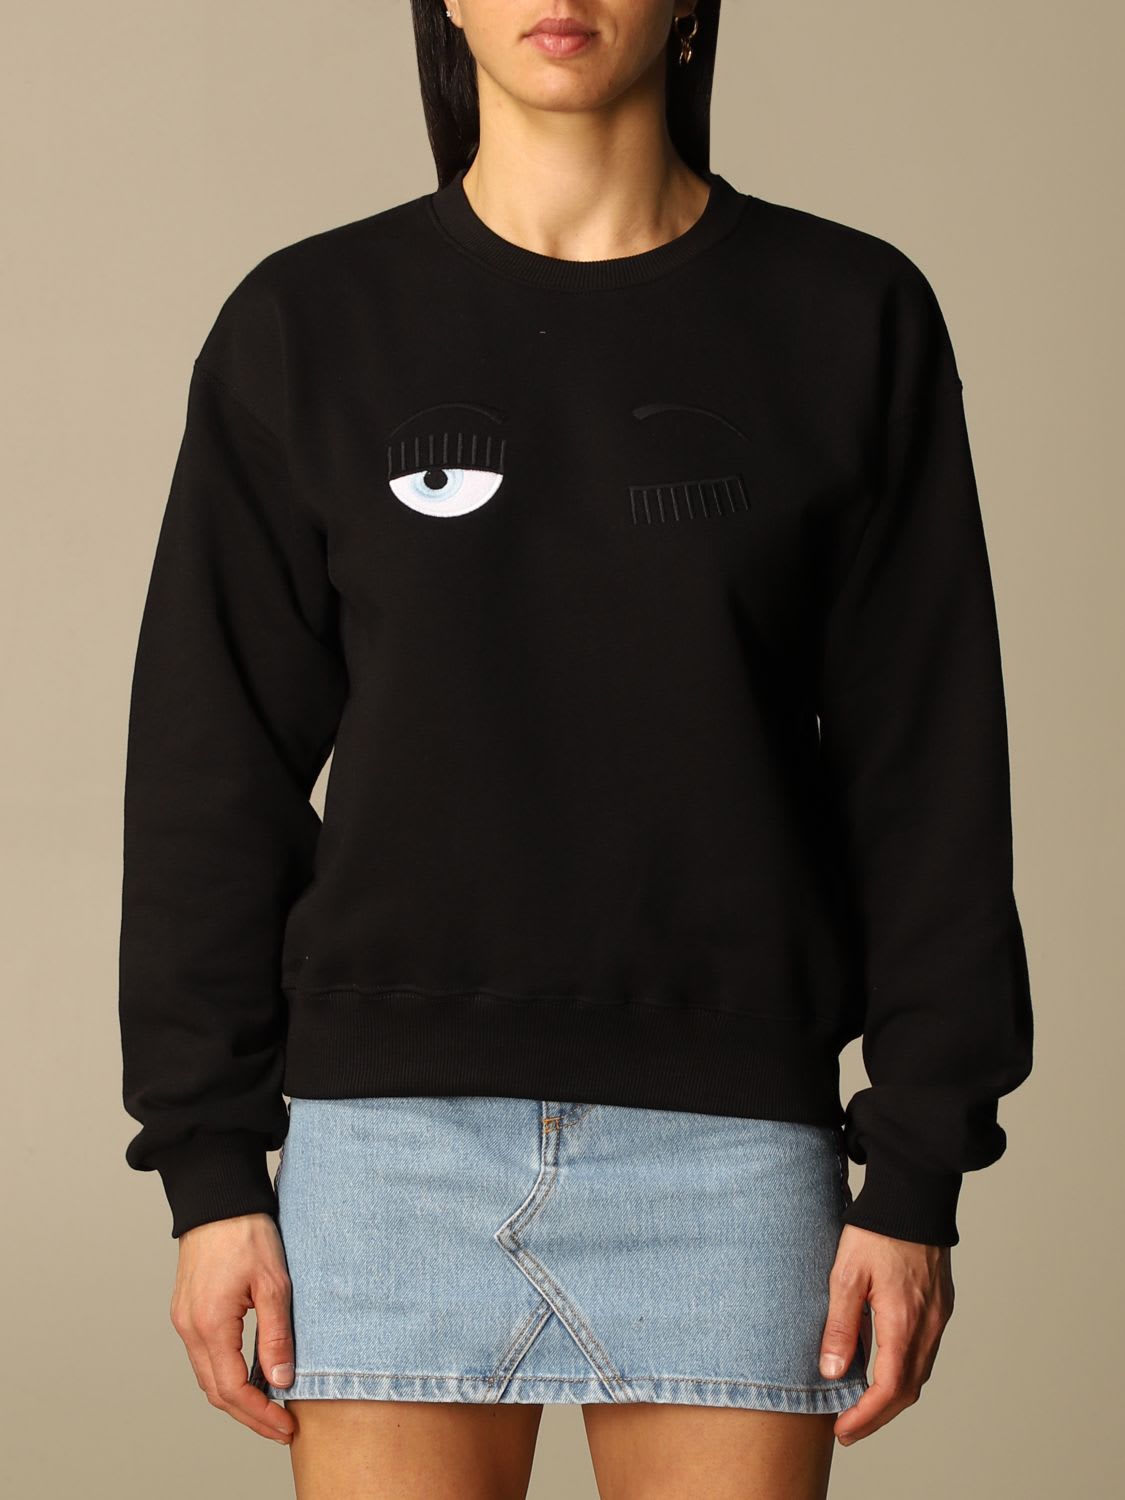 Chiara Ferragni Sweatshirt Chiara Ferragni Sweatshirt With Eyes Flirting Embroidery